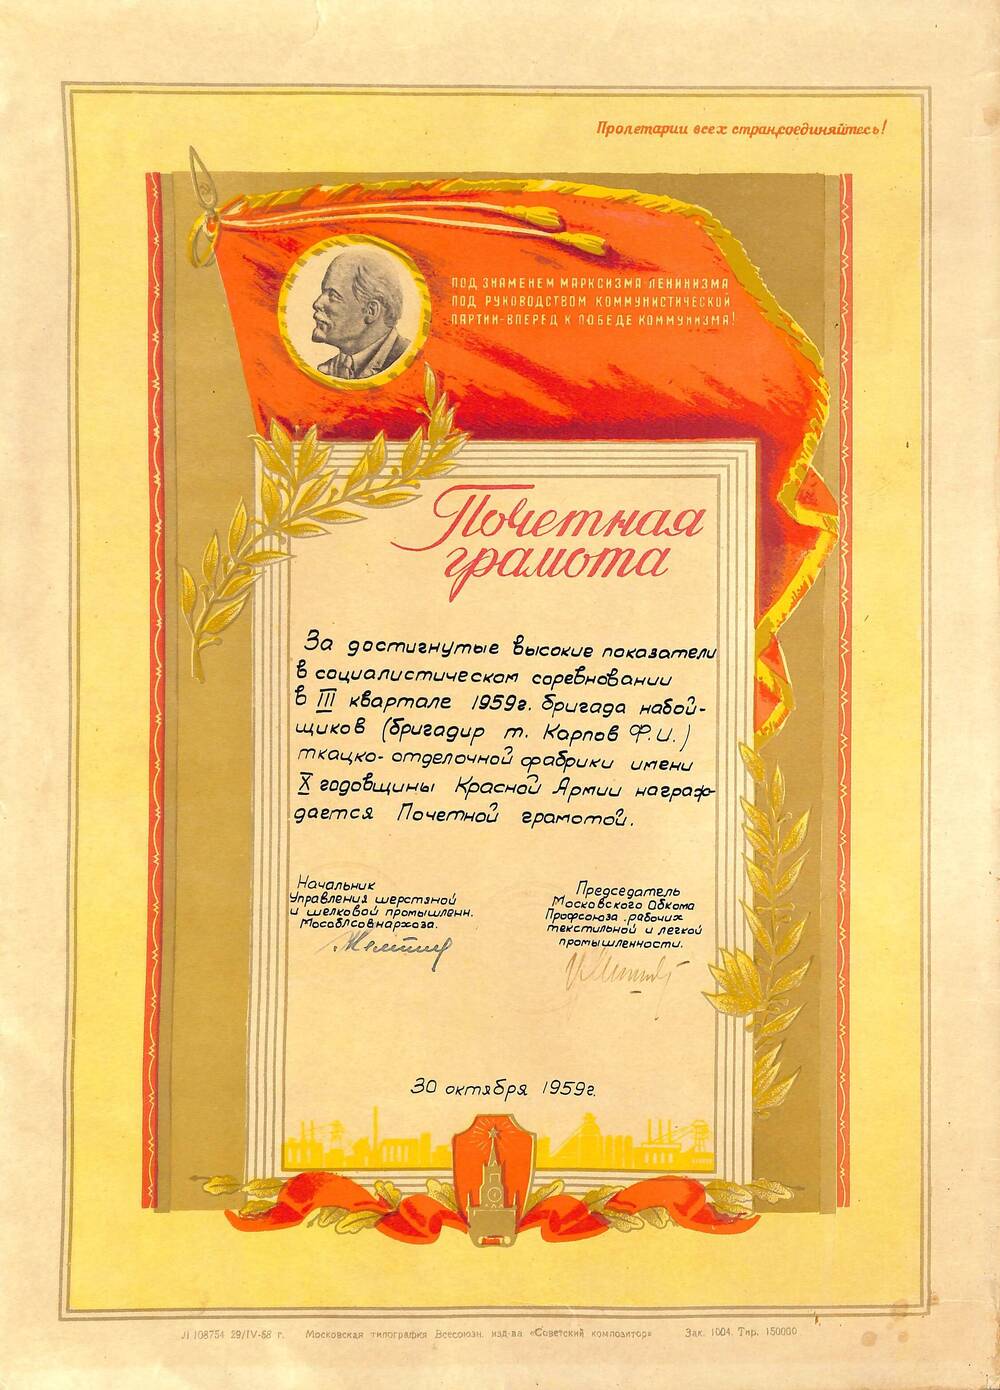 Почётная грамота Управления шерстяной и шелковой промышленности Мособлсовнархоза и Мособлпрофа Карпову Ф.И. (бригаде) за достигнутые показатели в социалистическом соревновании в III квартале 1959 г.